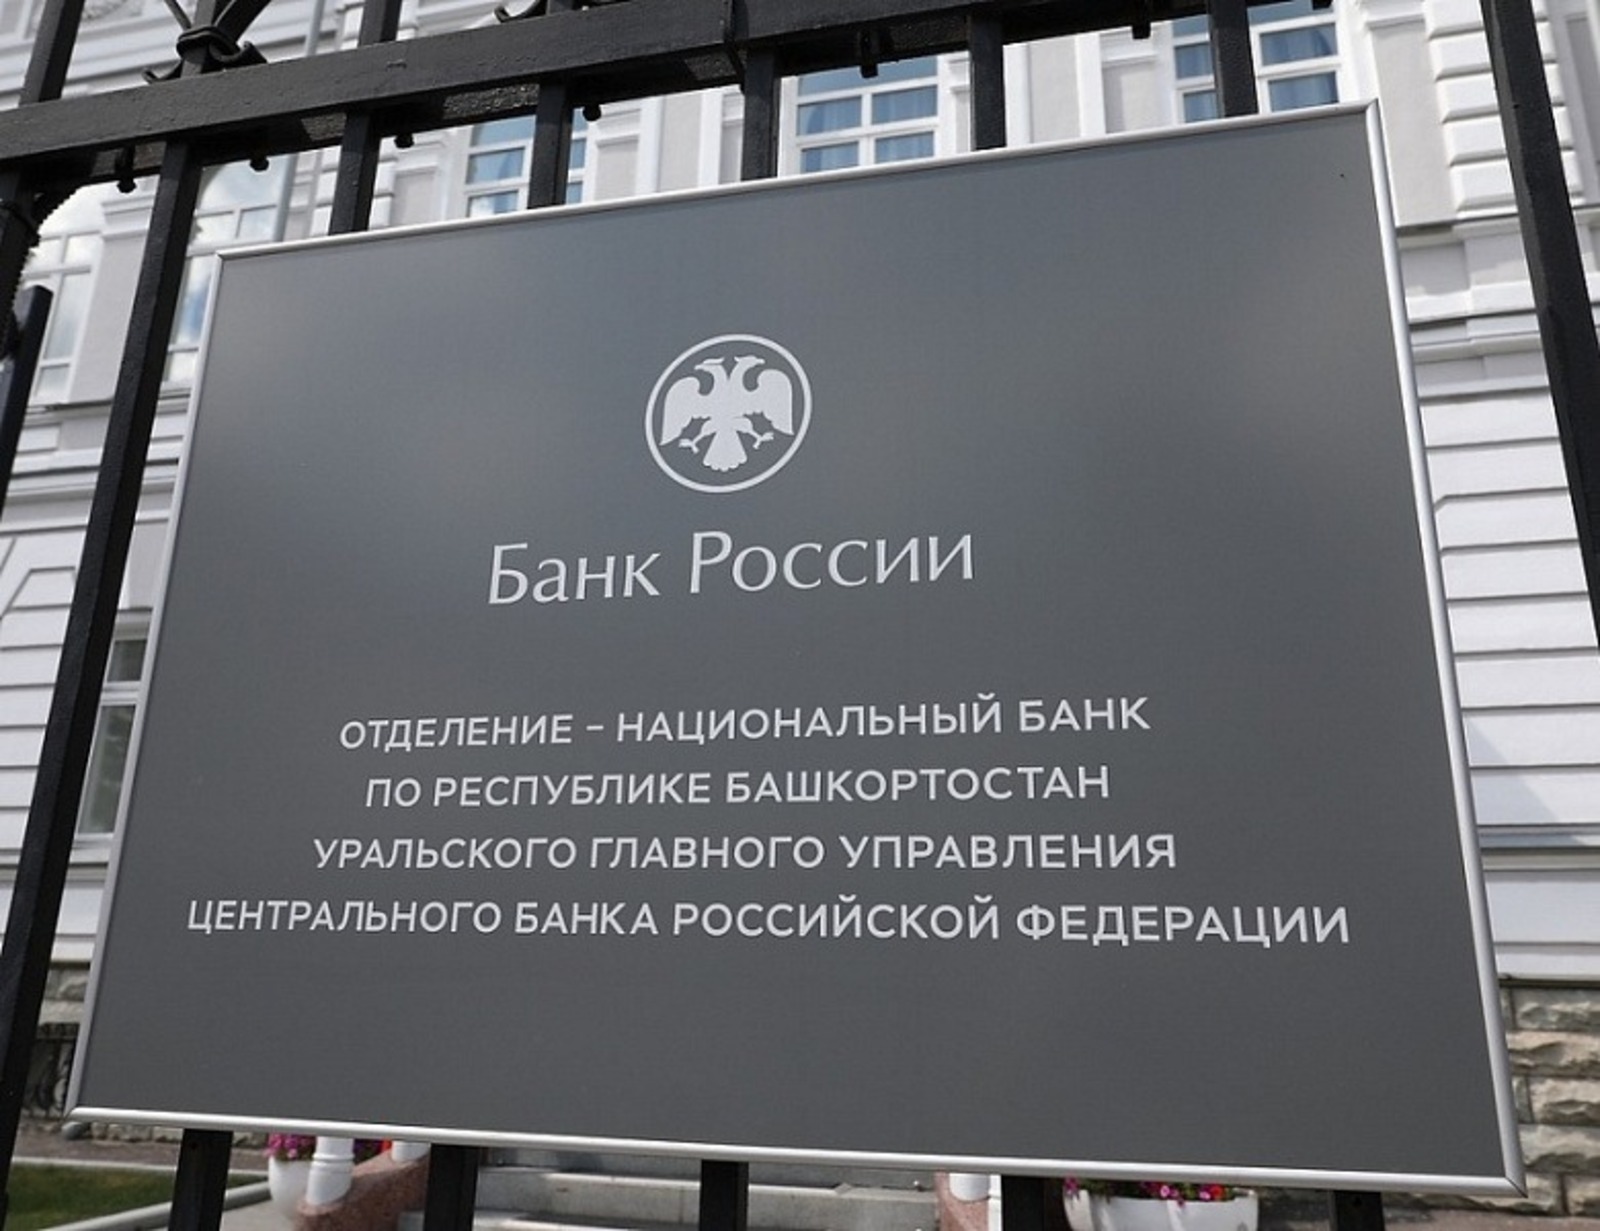 пресс-служба Отделения — Национального банка по Республике Башкортостан Уральского главного управления Центрального банка Российской Федерации